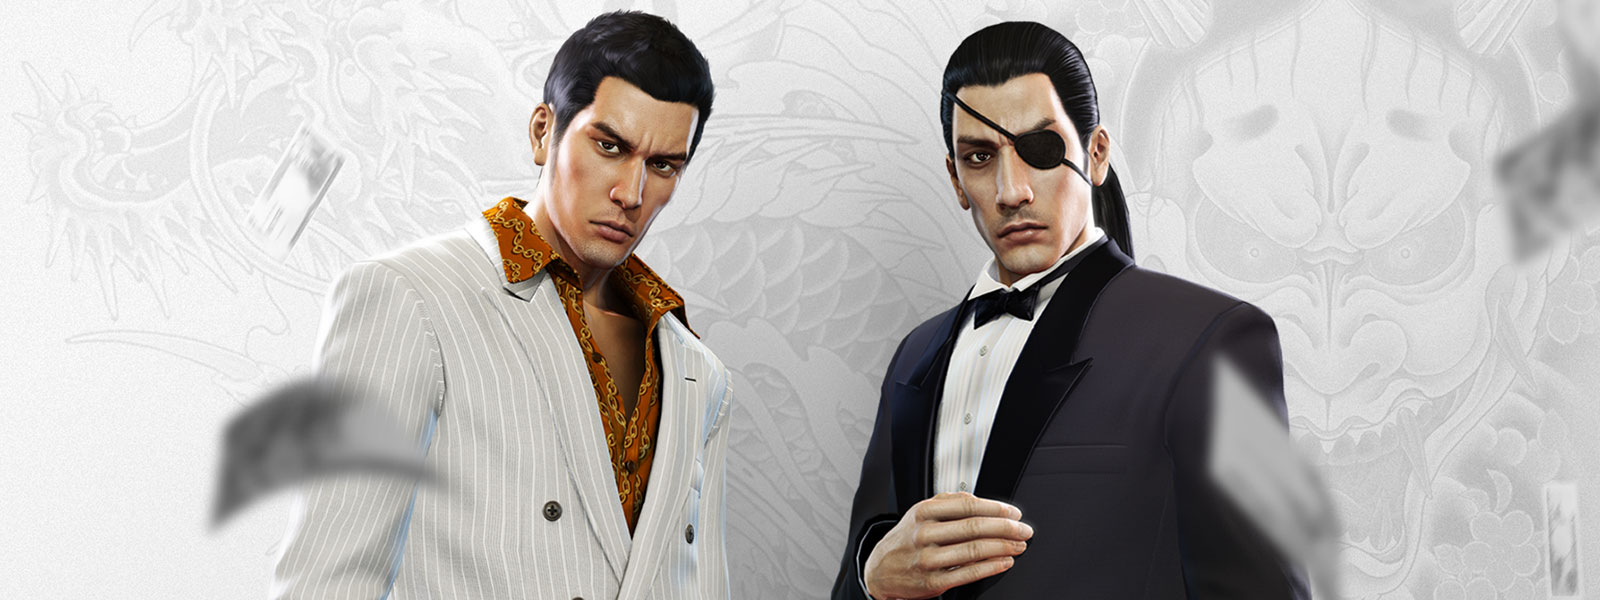 白とグレーの龍の刺青を背景に、派手なスーツの 2 人の「Yakuza」のキャラクターがにらみあう。2人の周りにお金が散らばり落ちる